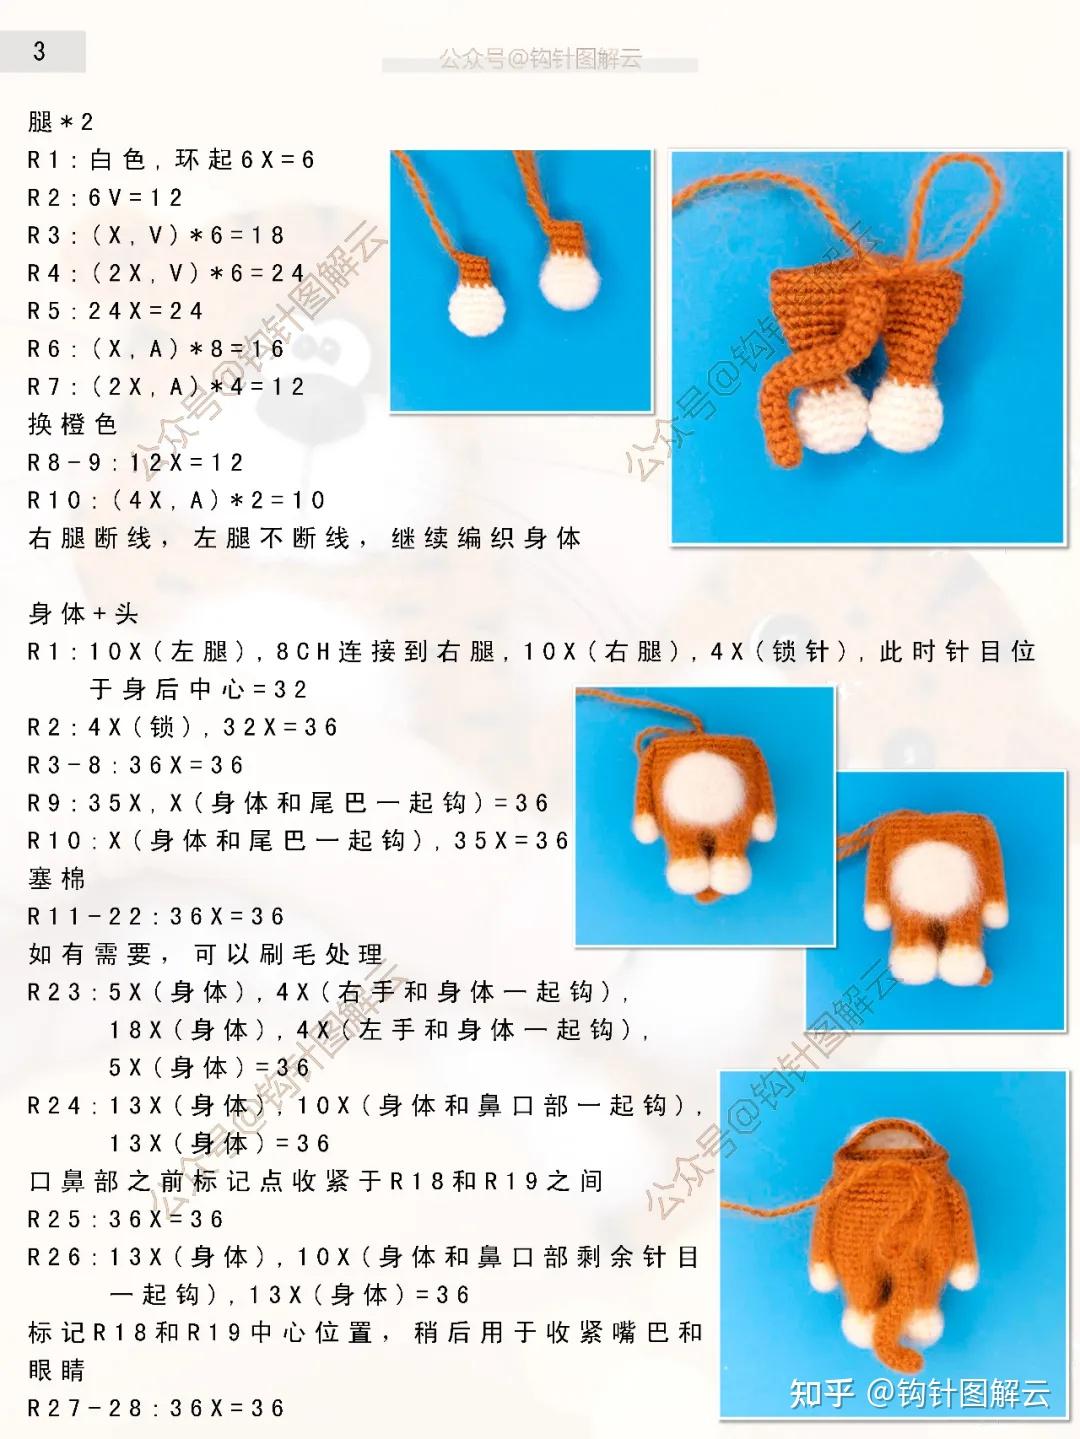 小老虎编织织法教程图片